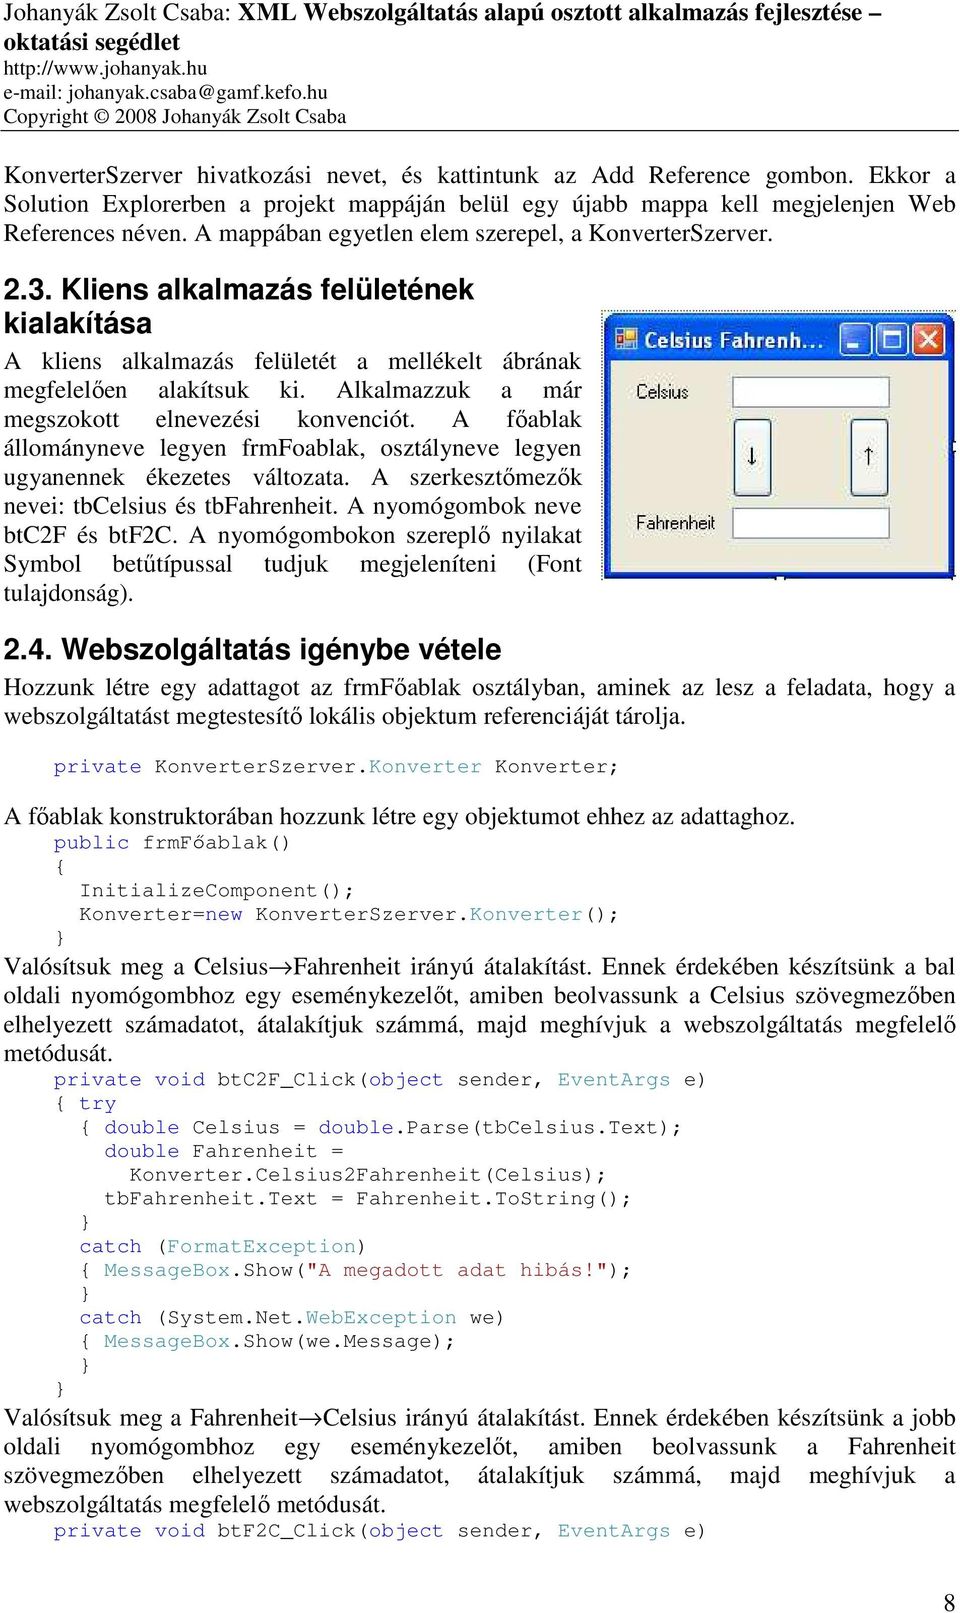 XML Webszolgáltatás alapú osztott alkalmazás fejlesztése Johanyák Zsolt  Csaba 1 - PDF Free Download